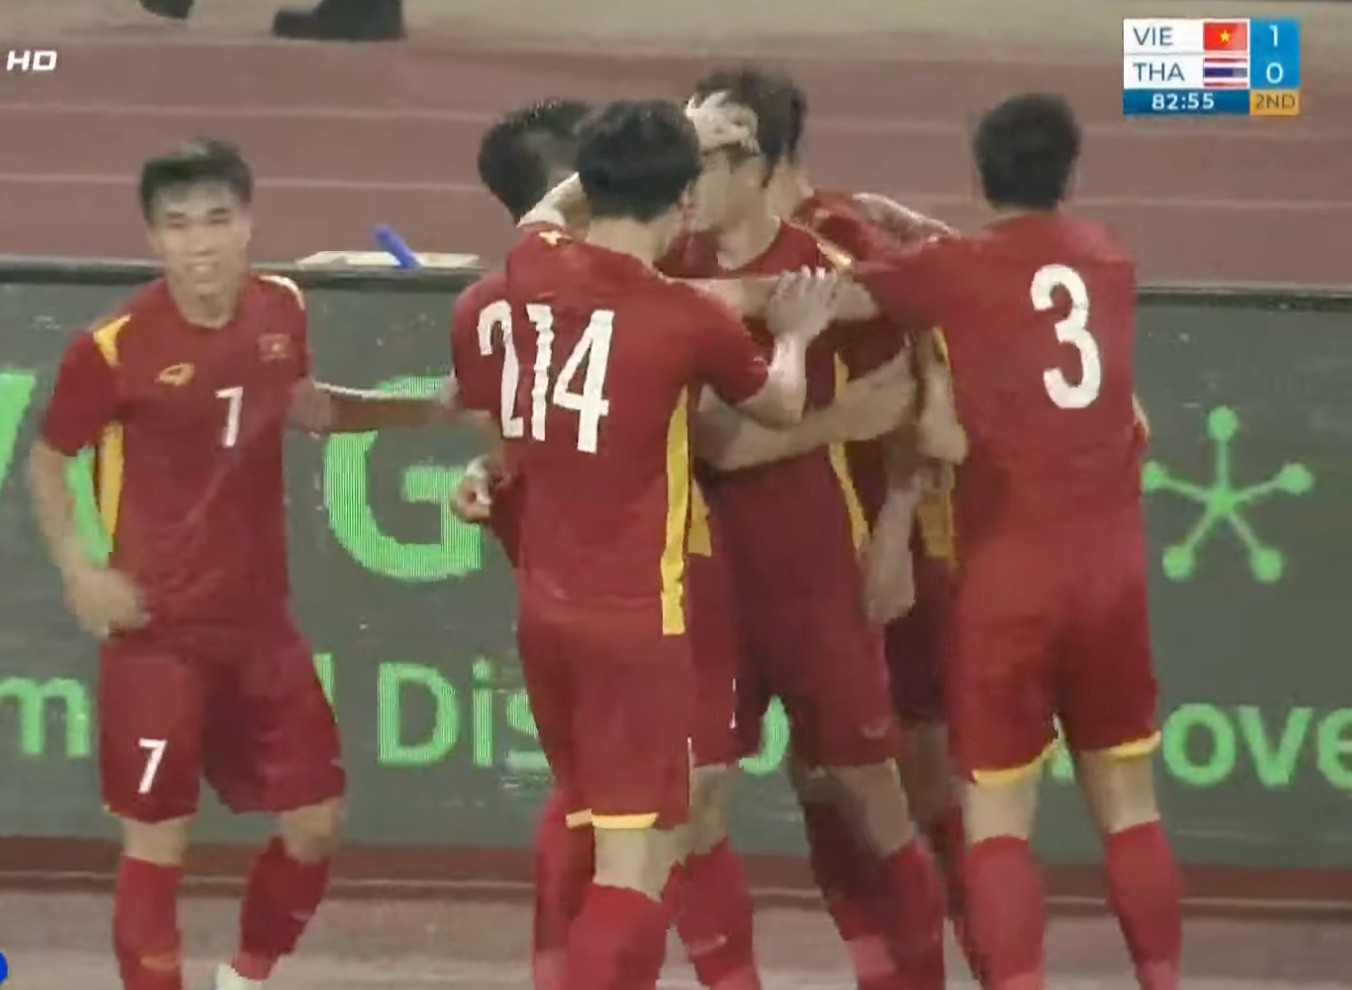 Sao Việt ăn mừng chiến thắng U23 Việt Nam: Người bật khóc vì xúc động, người lên đồ xuống đường thâu đêm